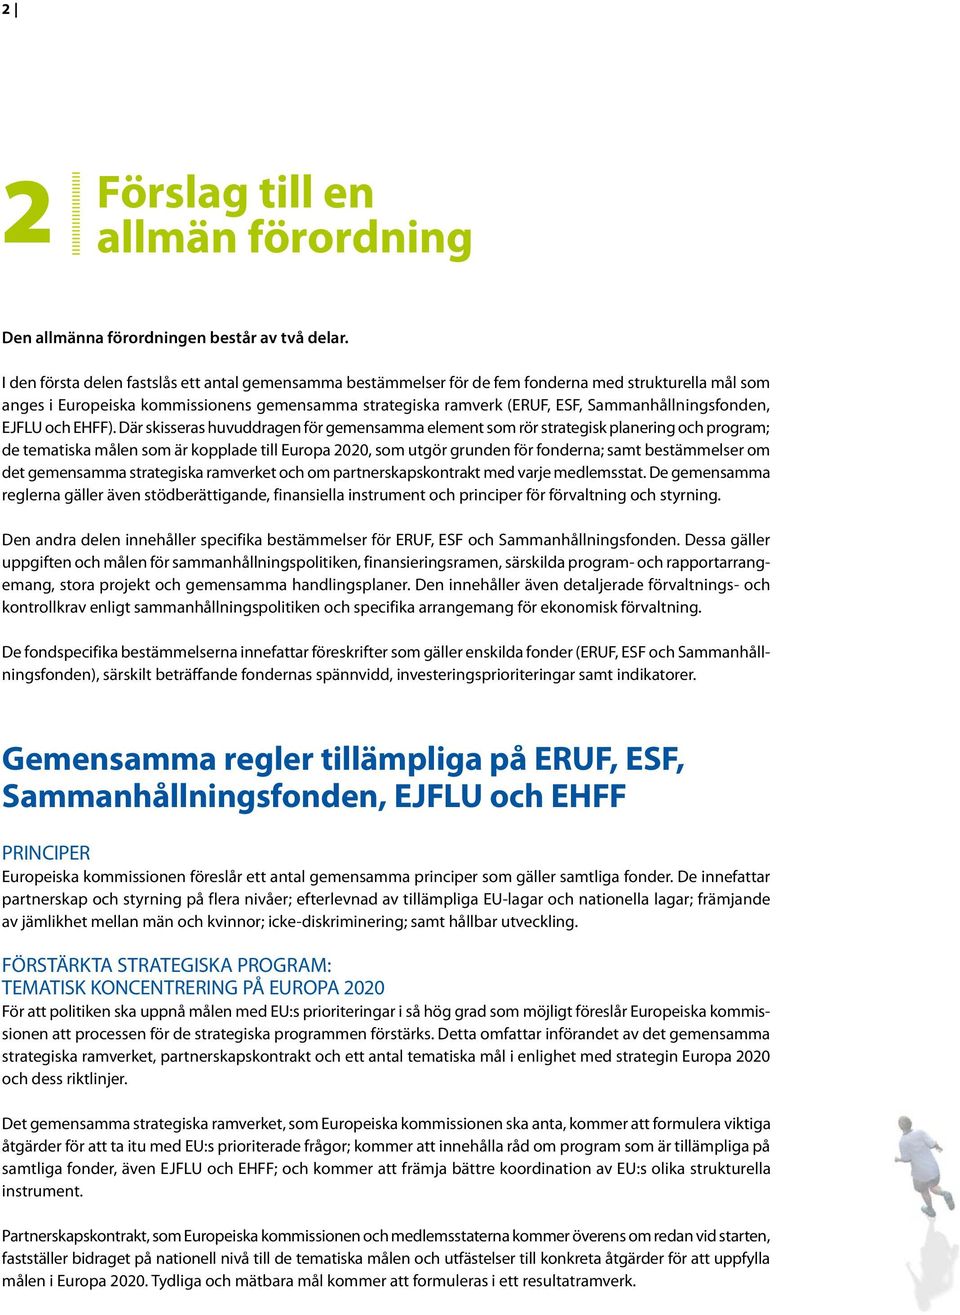 Sammanhållningsfonden, EJFLU och EHFF).